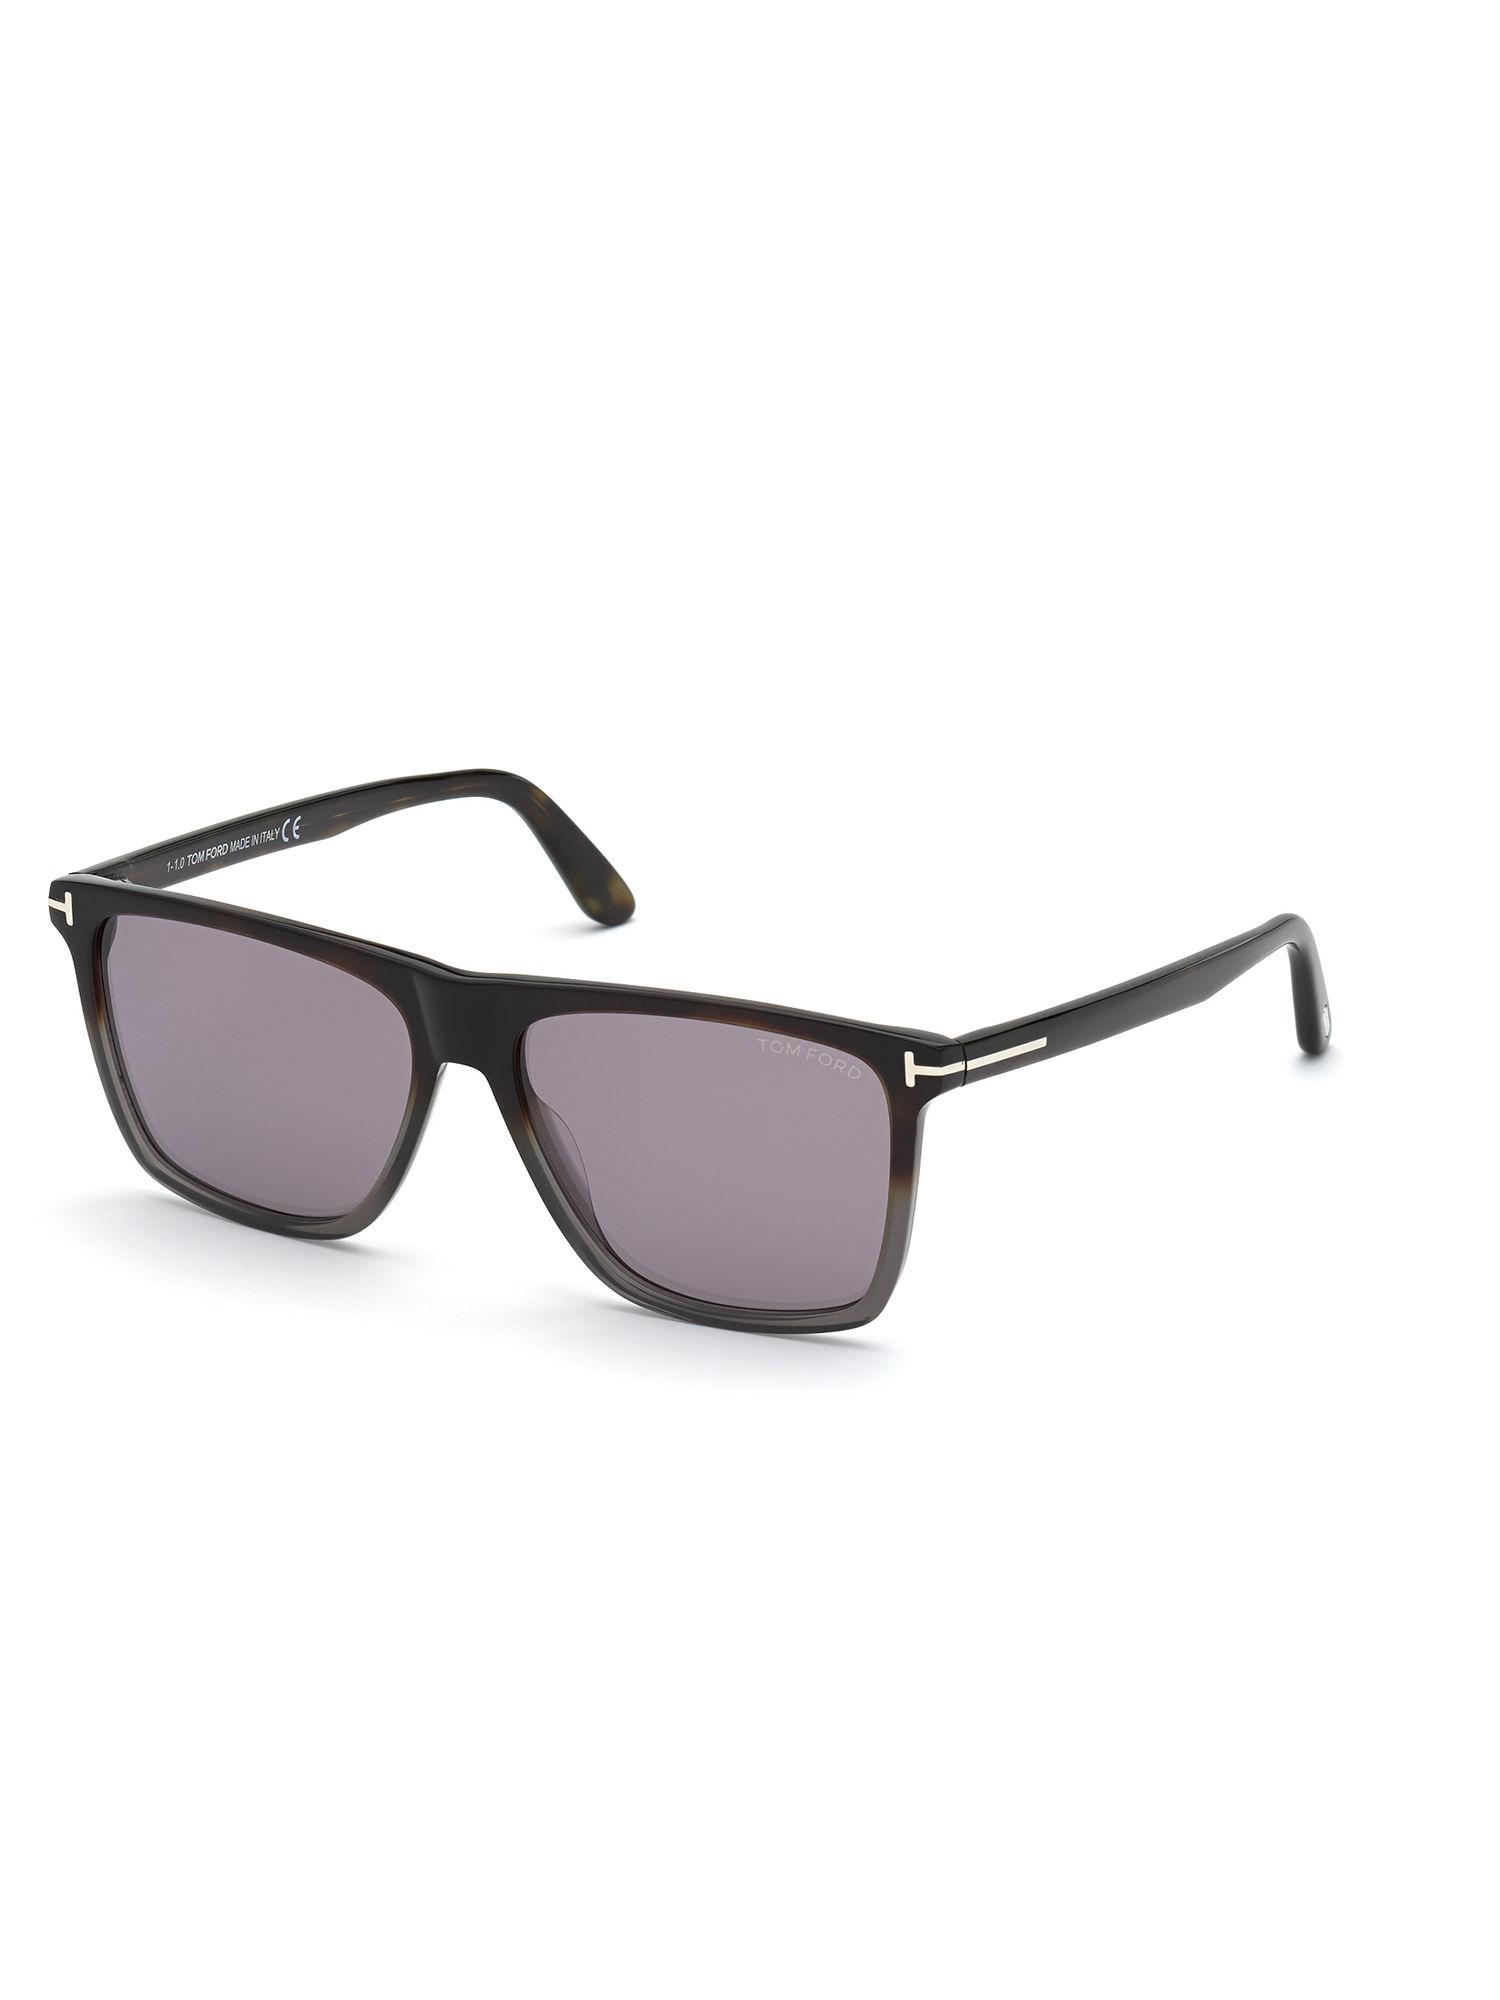 black-plastic-sunglasses-ft0832-59-55c